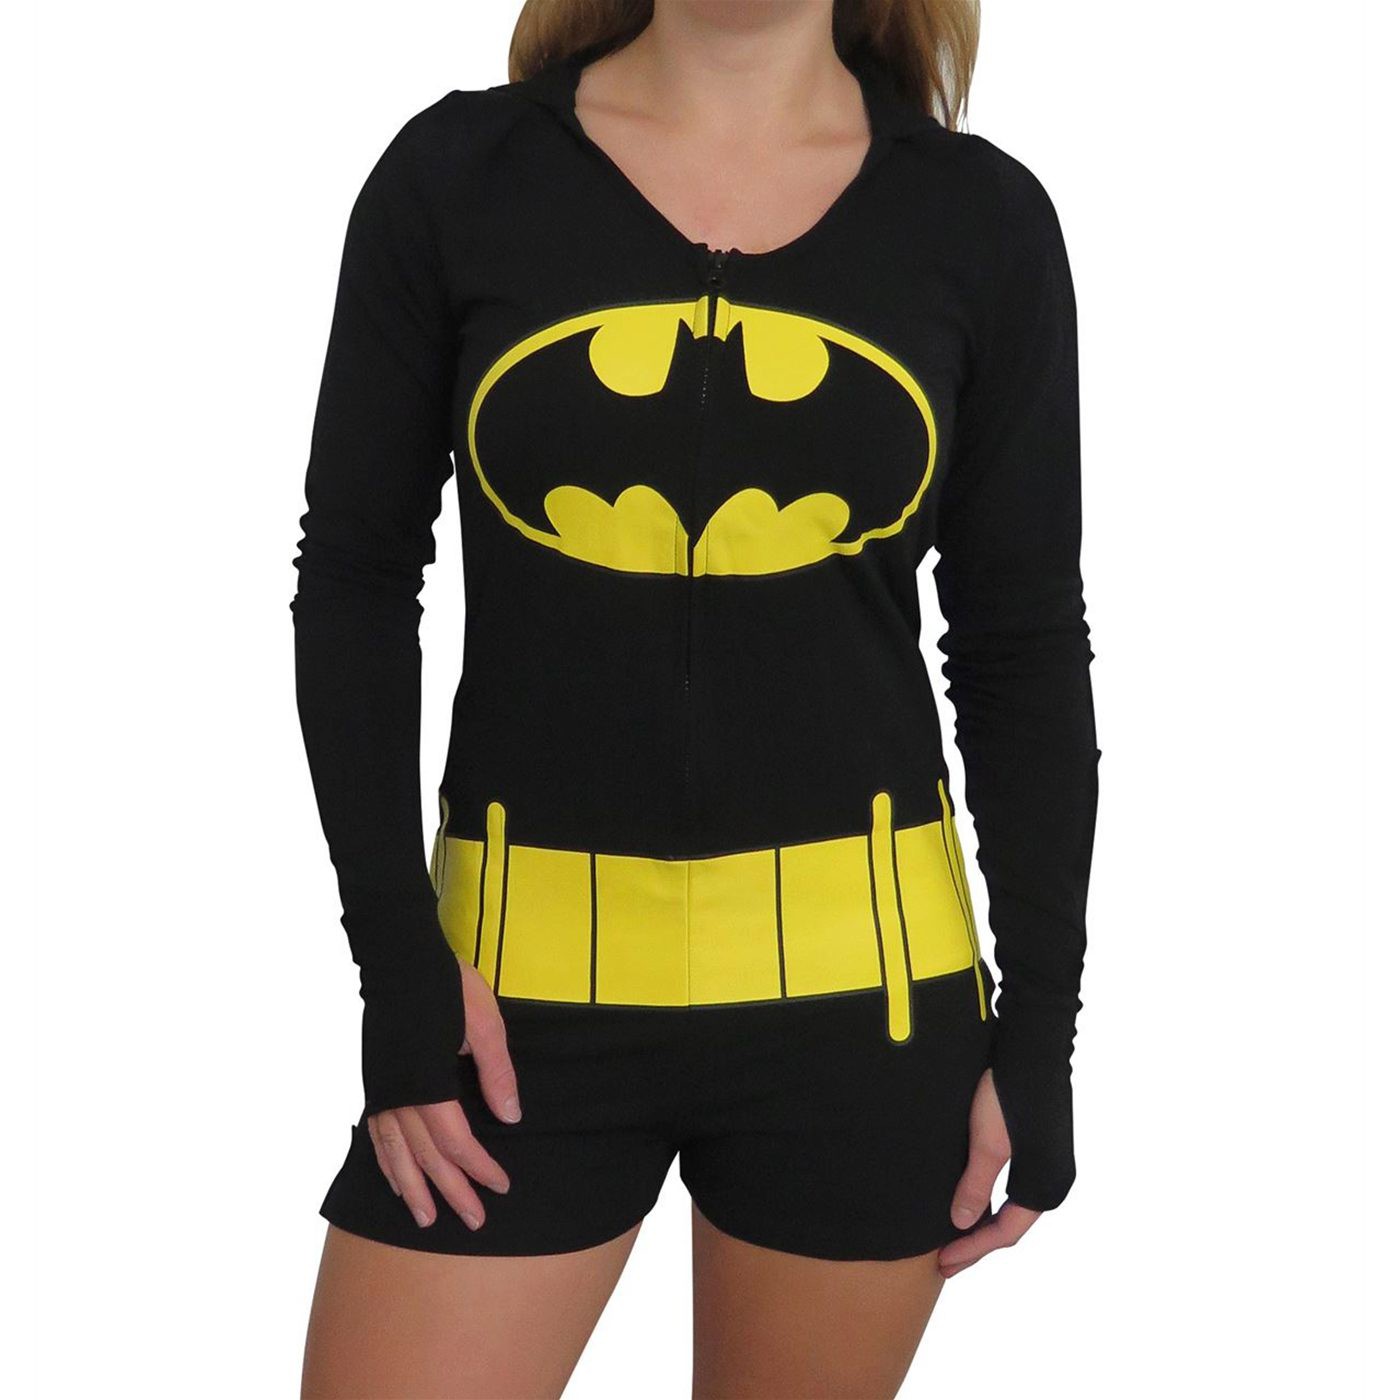 Женская бэтмен. Девушка в футболке Бэтмена. Футболка с Бэтменом. Пижама Бэтмен женская. Костюм Бэтмена женский.